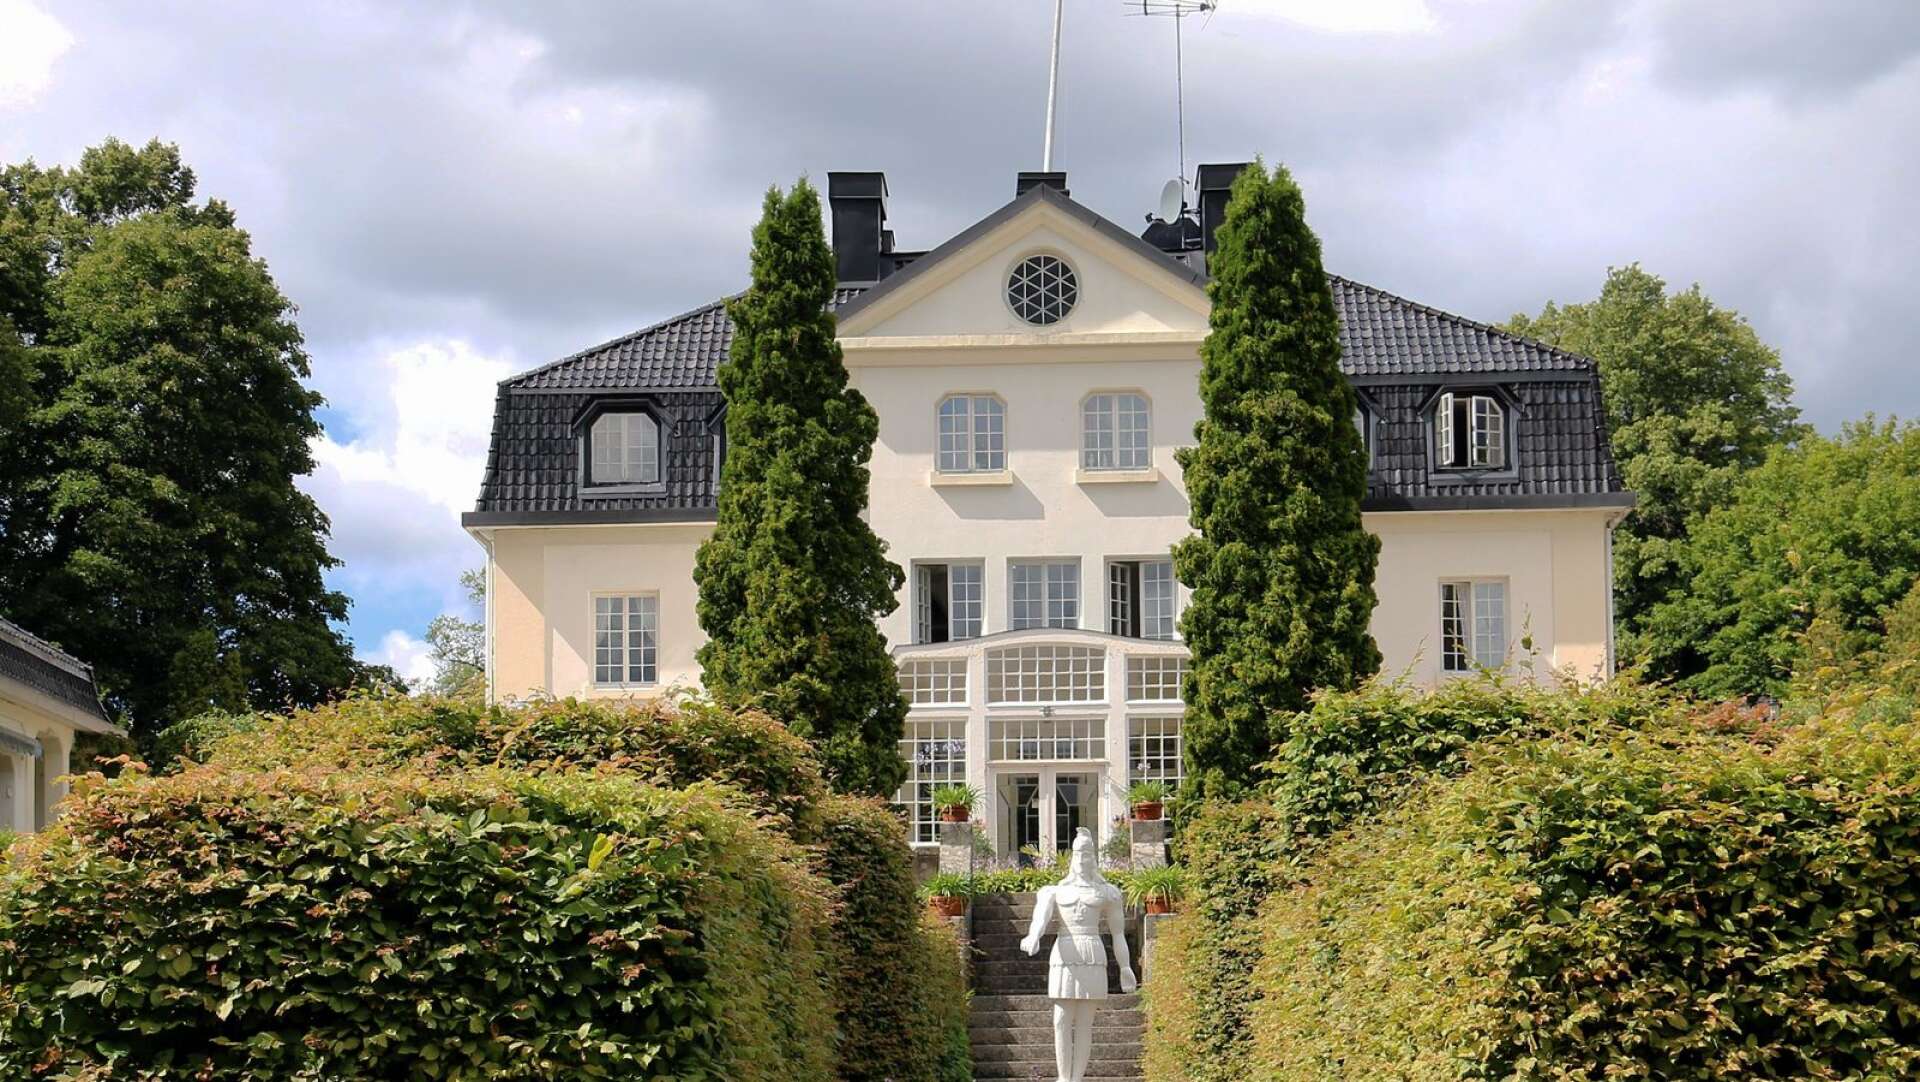 Situationen är katastrofal för Baldersnäs herrgård, enligt hotellchefen Susanne Jensen.